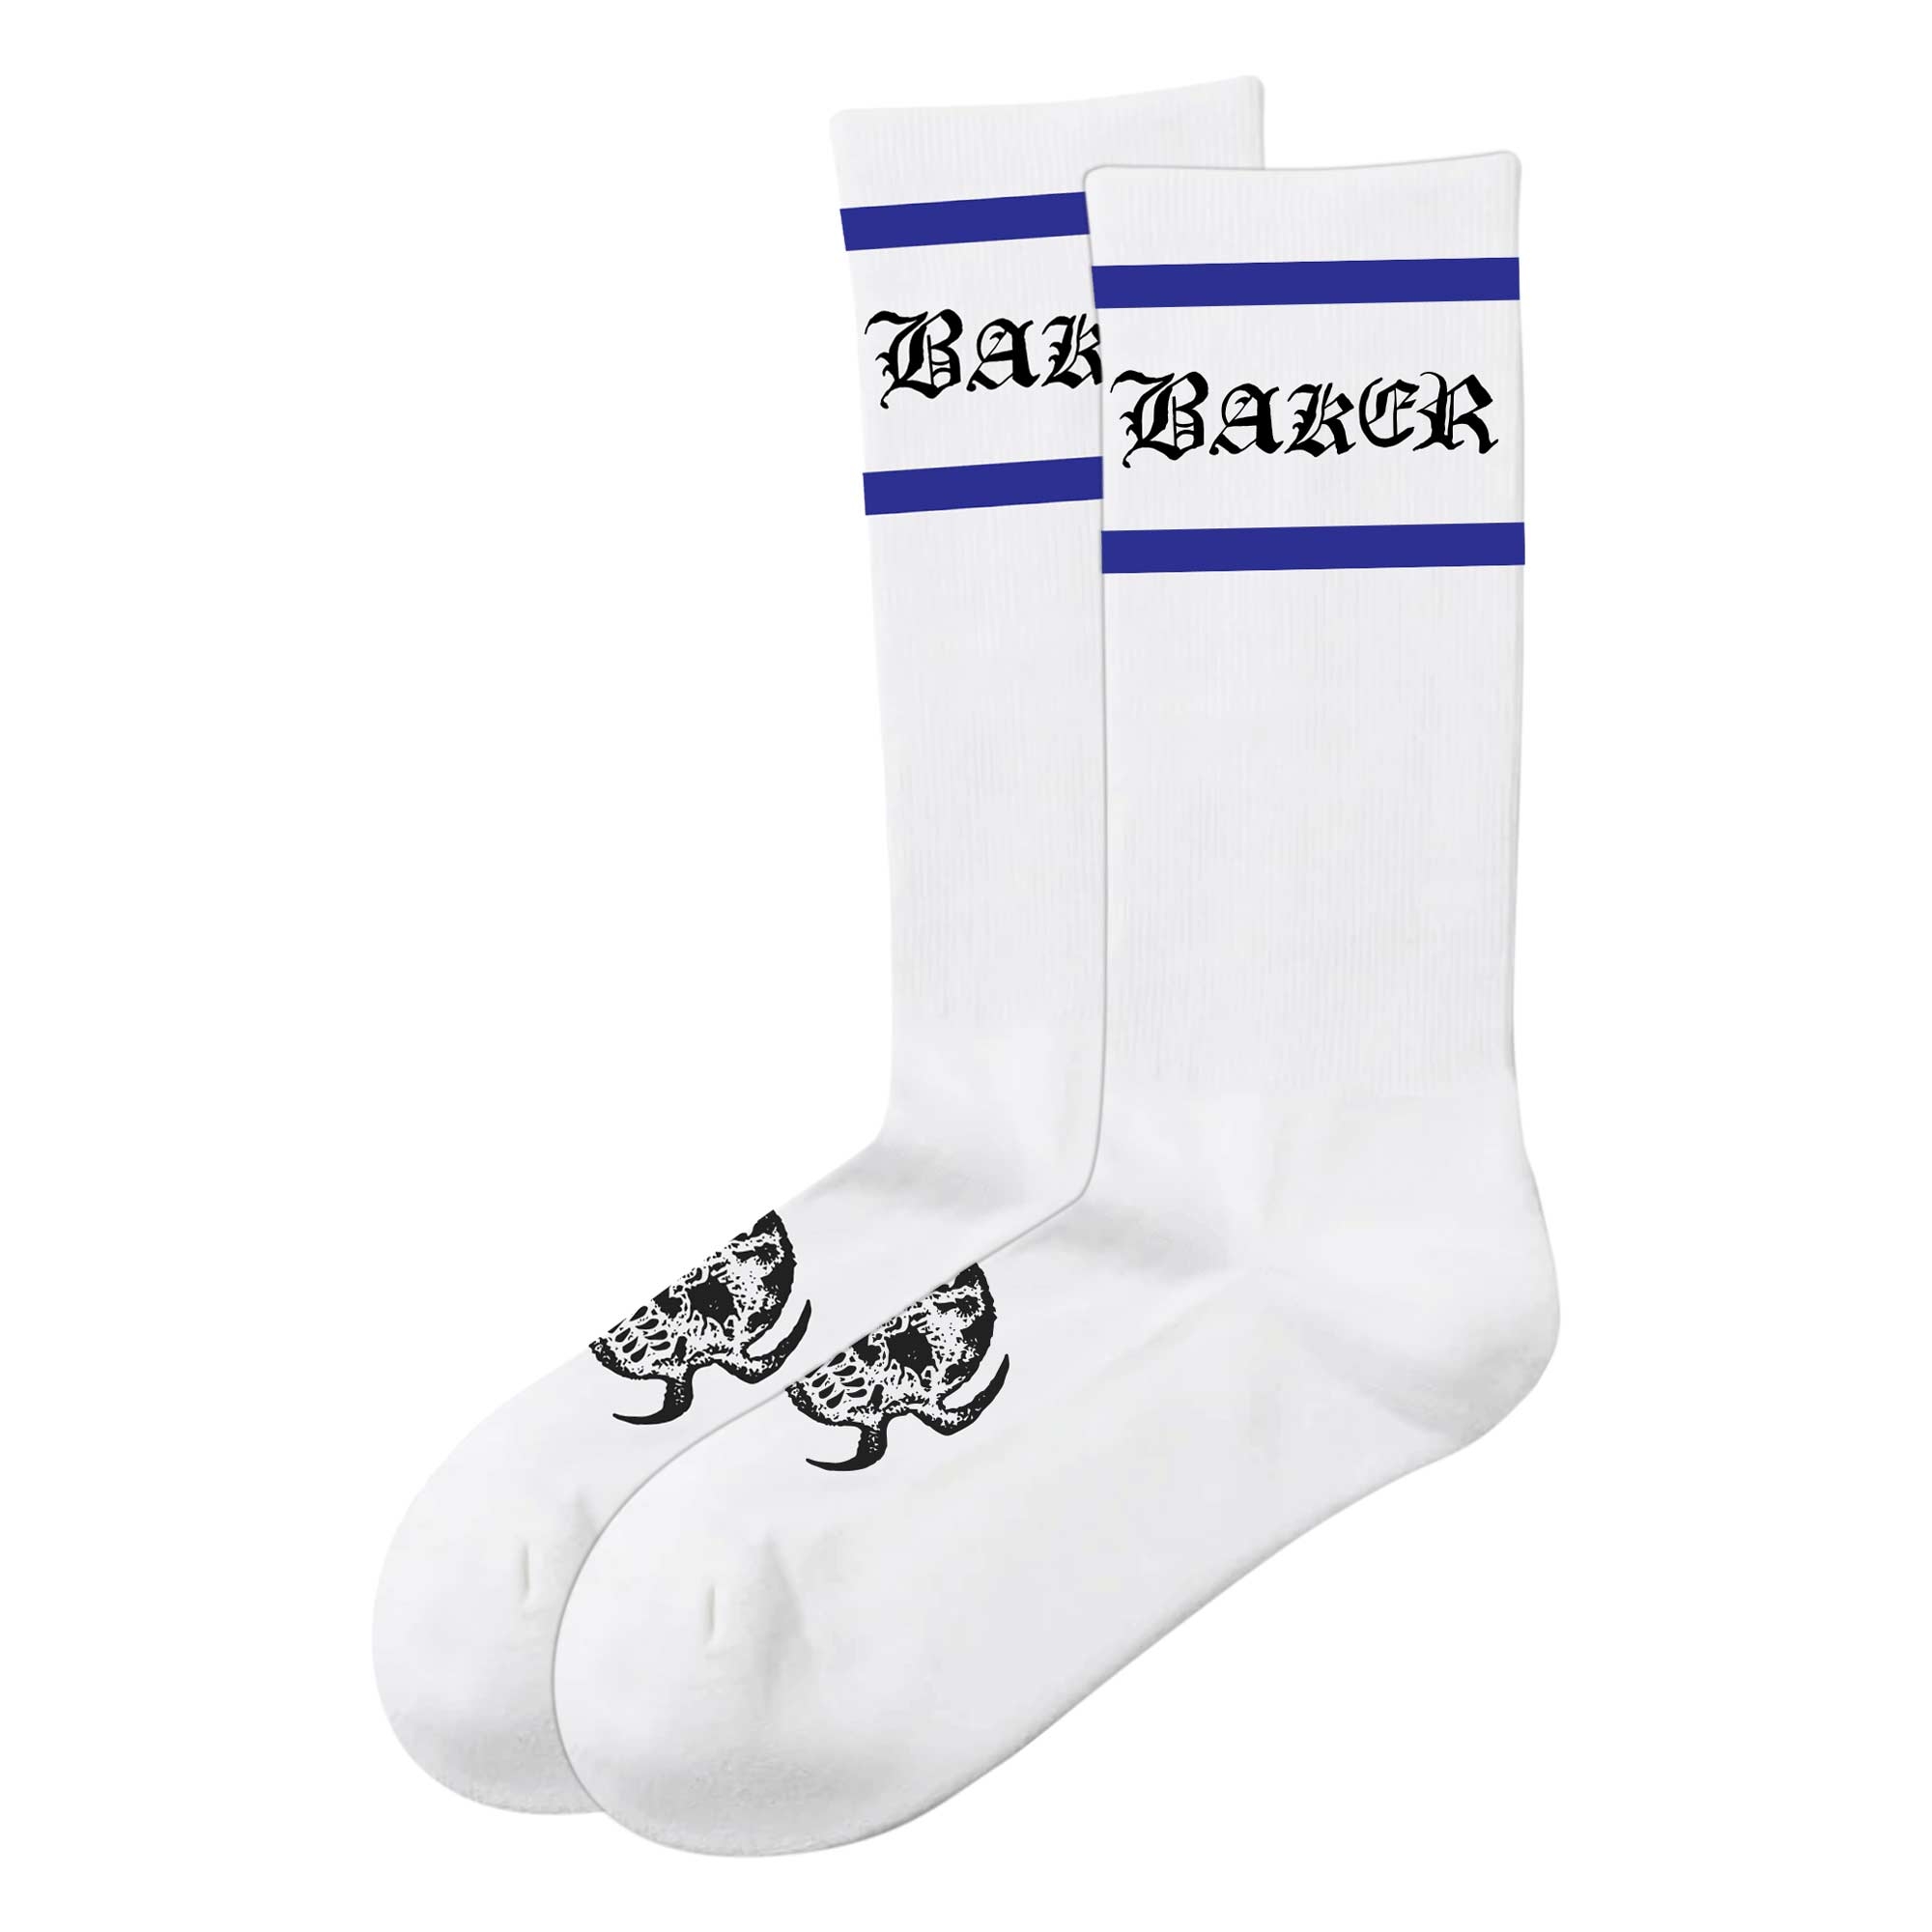 BAKER Socks OLDE 1-Pair, white